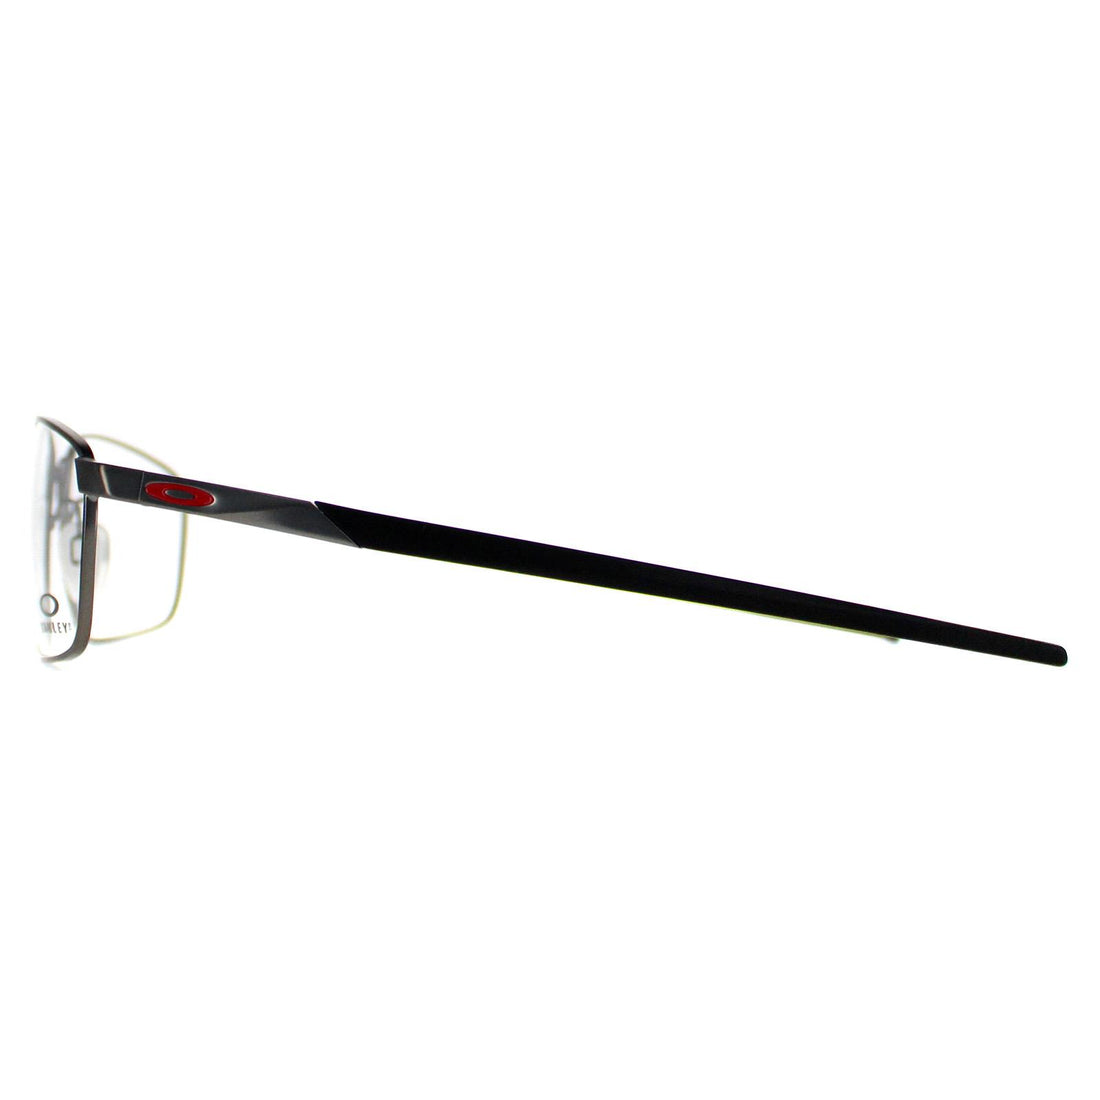 Oakley Glasses Frames Extender OX3249-04 Matte Gunmetal Men